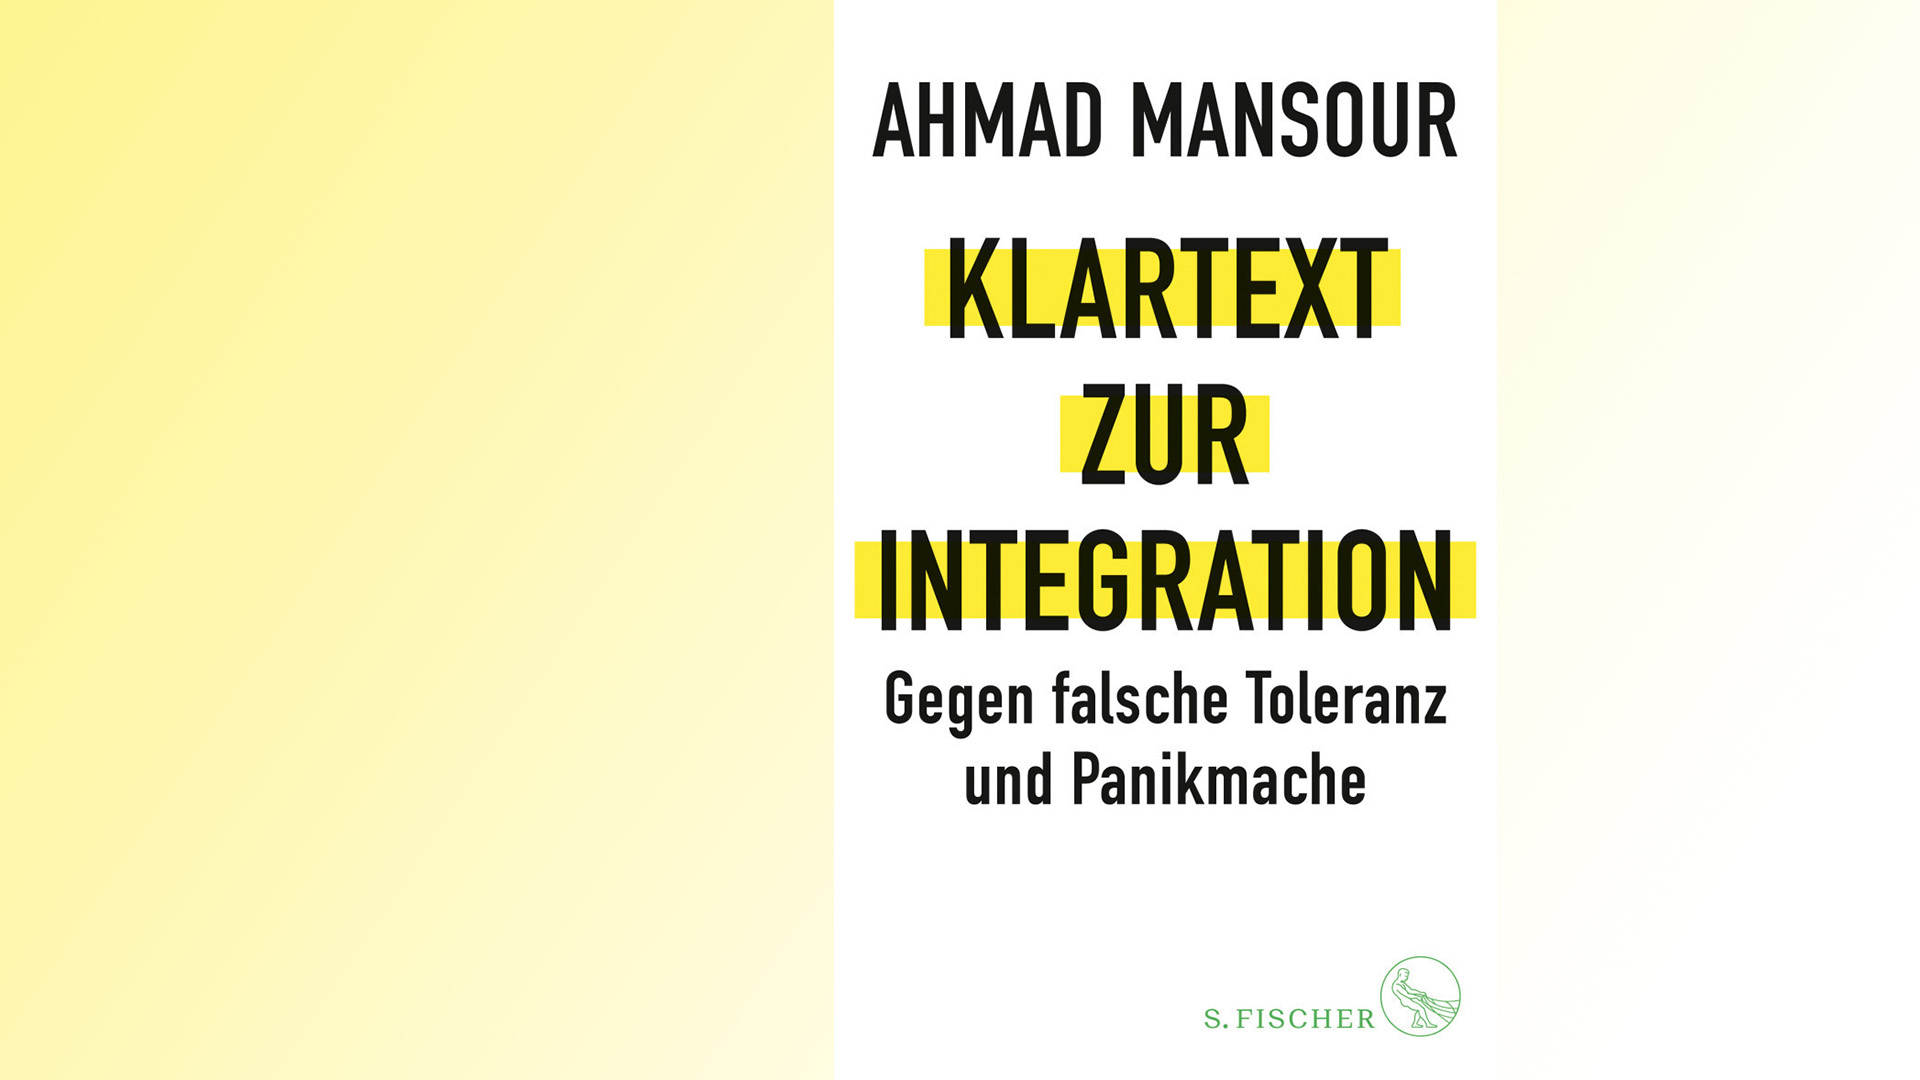 Ahmad Mansour: „Klartext zur Integration: Gegen falsche Toleranz und Panikmache“, S. Fischer, 303 Seiten, 20 Euro, ISBN 9783103973877.